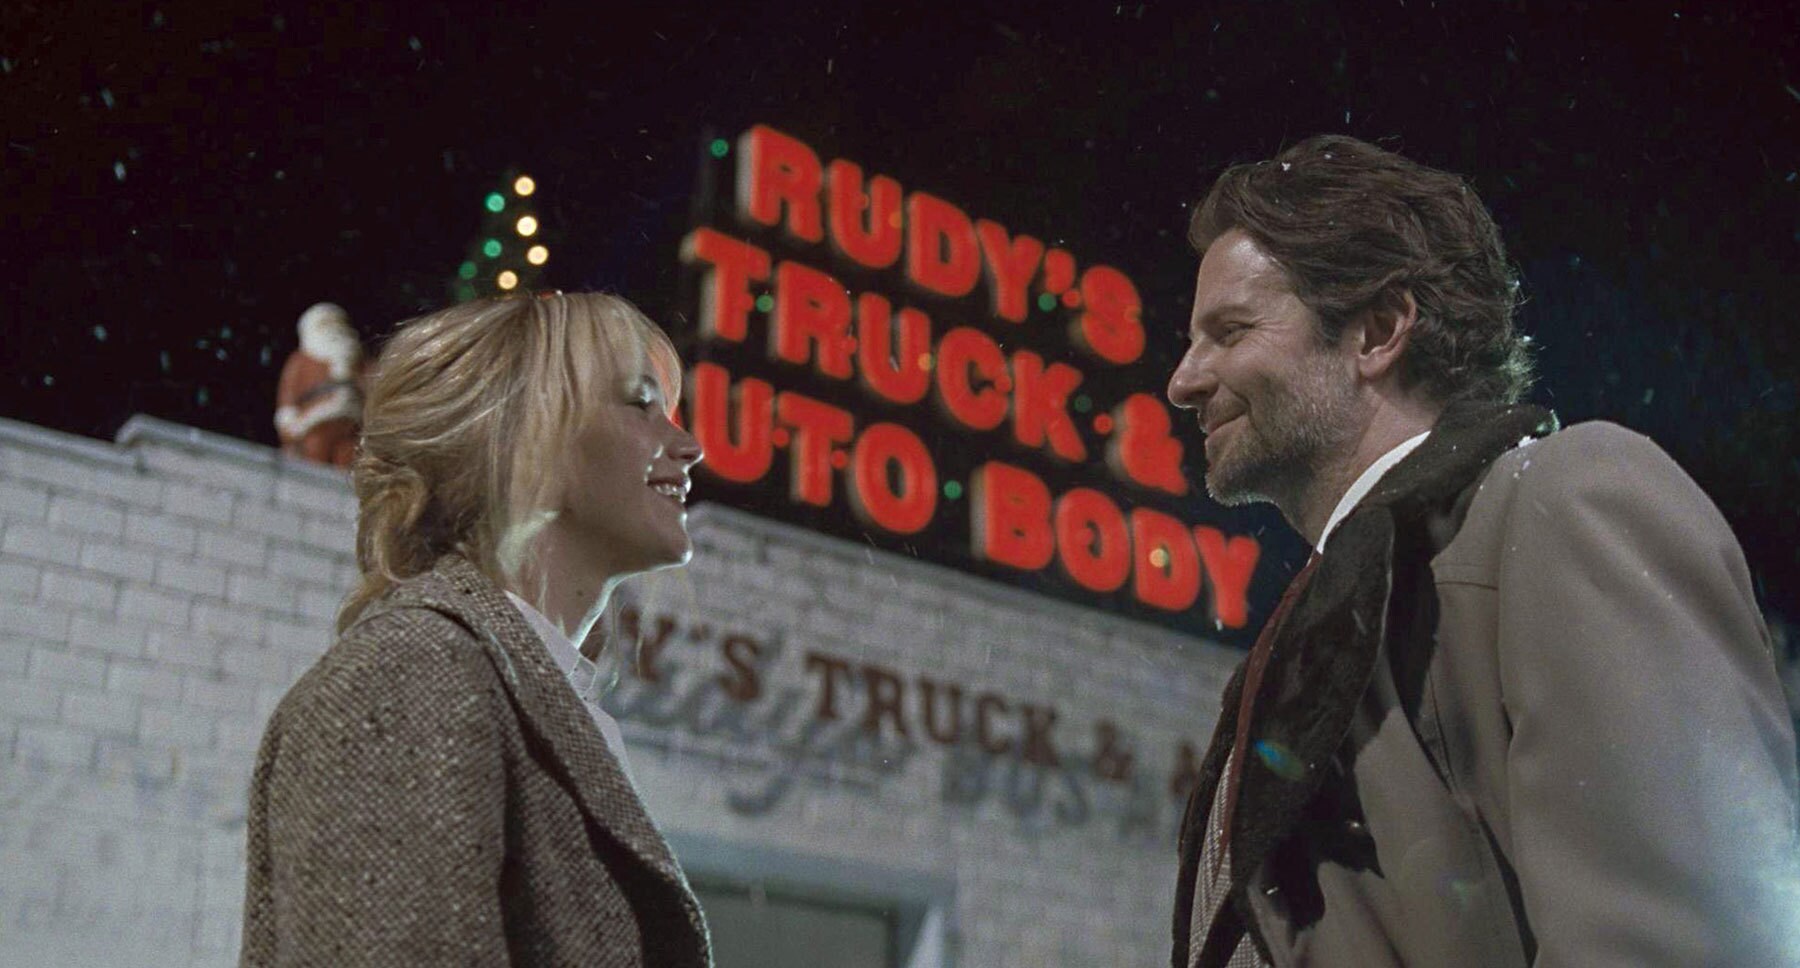 Bradley Cooper (as Neil Walker) and Jennifer Lawrence (as Joy) standing outside of Rudy's Audo Shop in "Joy"